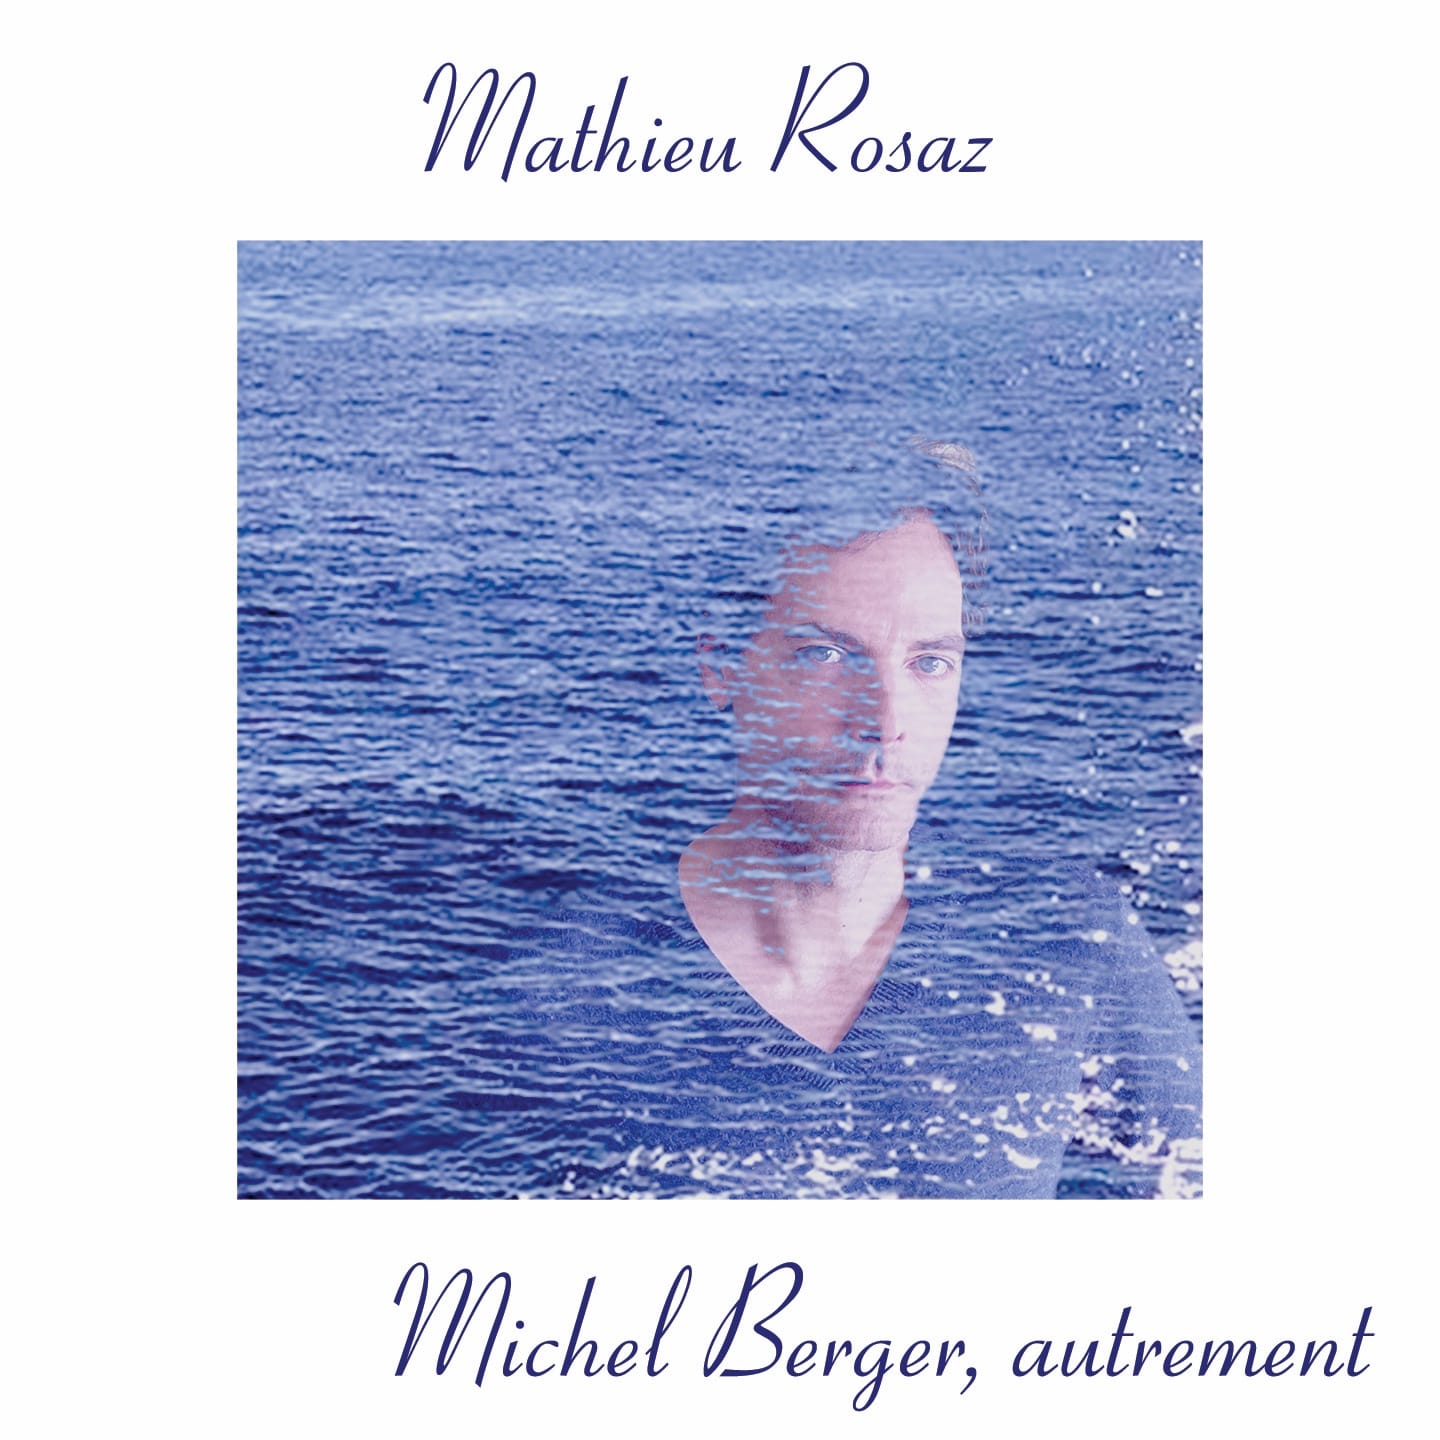 Mathieu Rosaz album Michel Berger, autrement image pochette